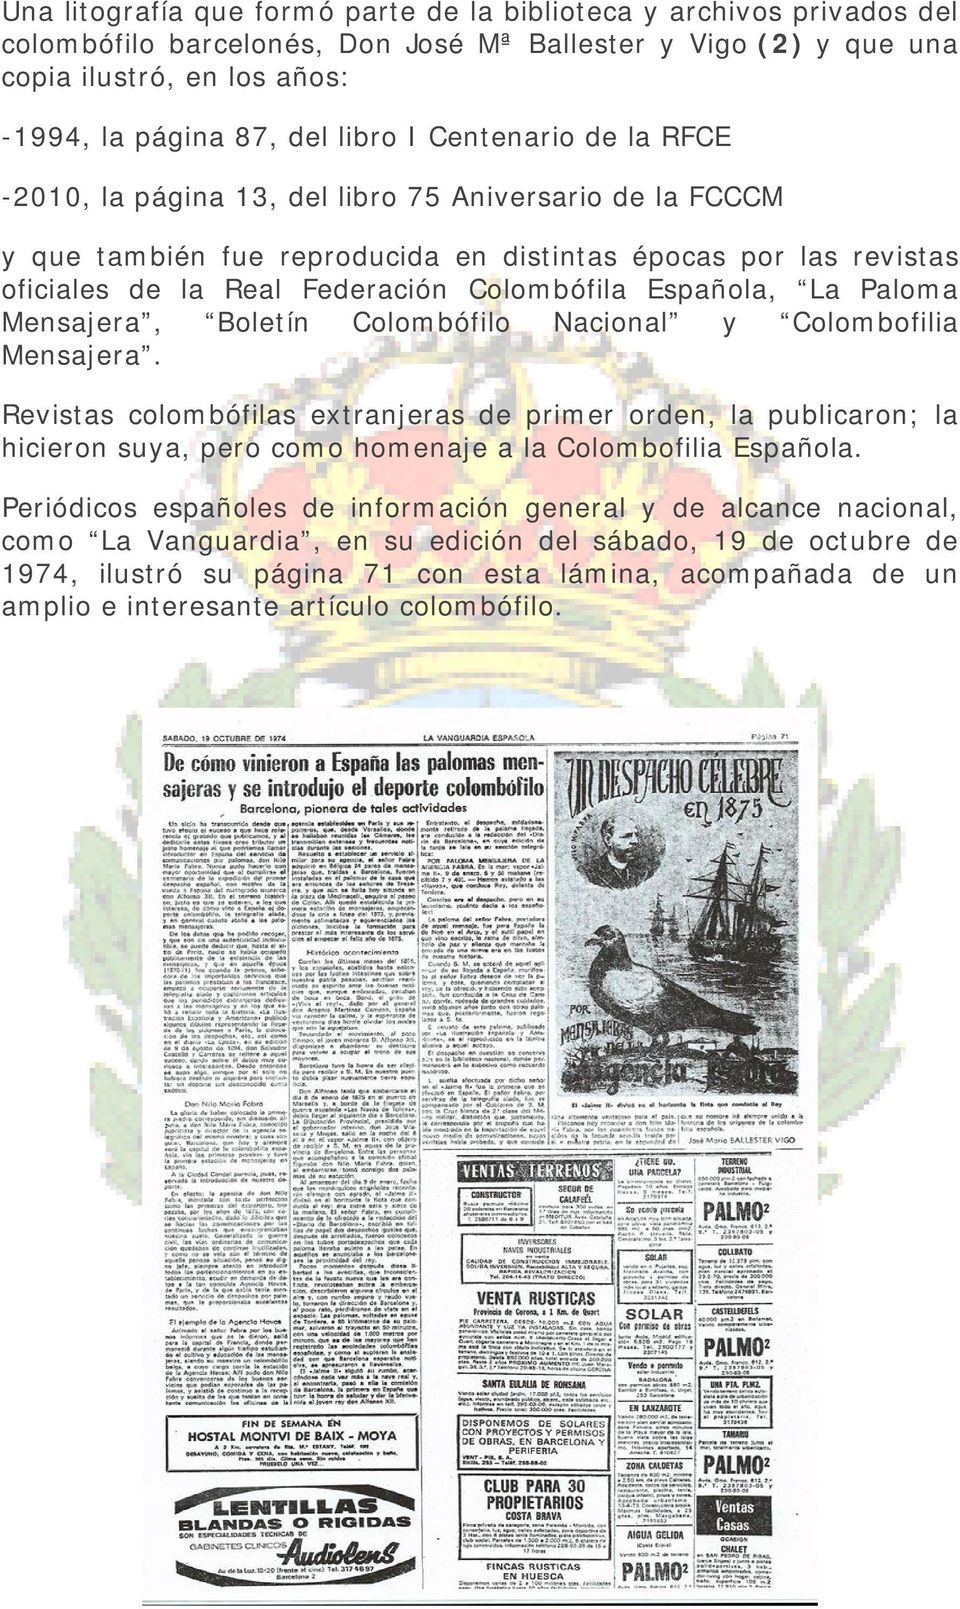 Española, La Paloma Mensajera, Boletín Colombófilo Nacional y Colombofilia Mensajera.